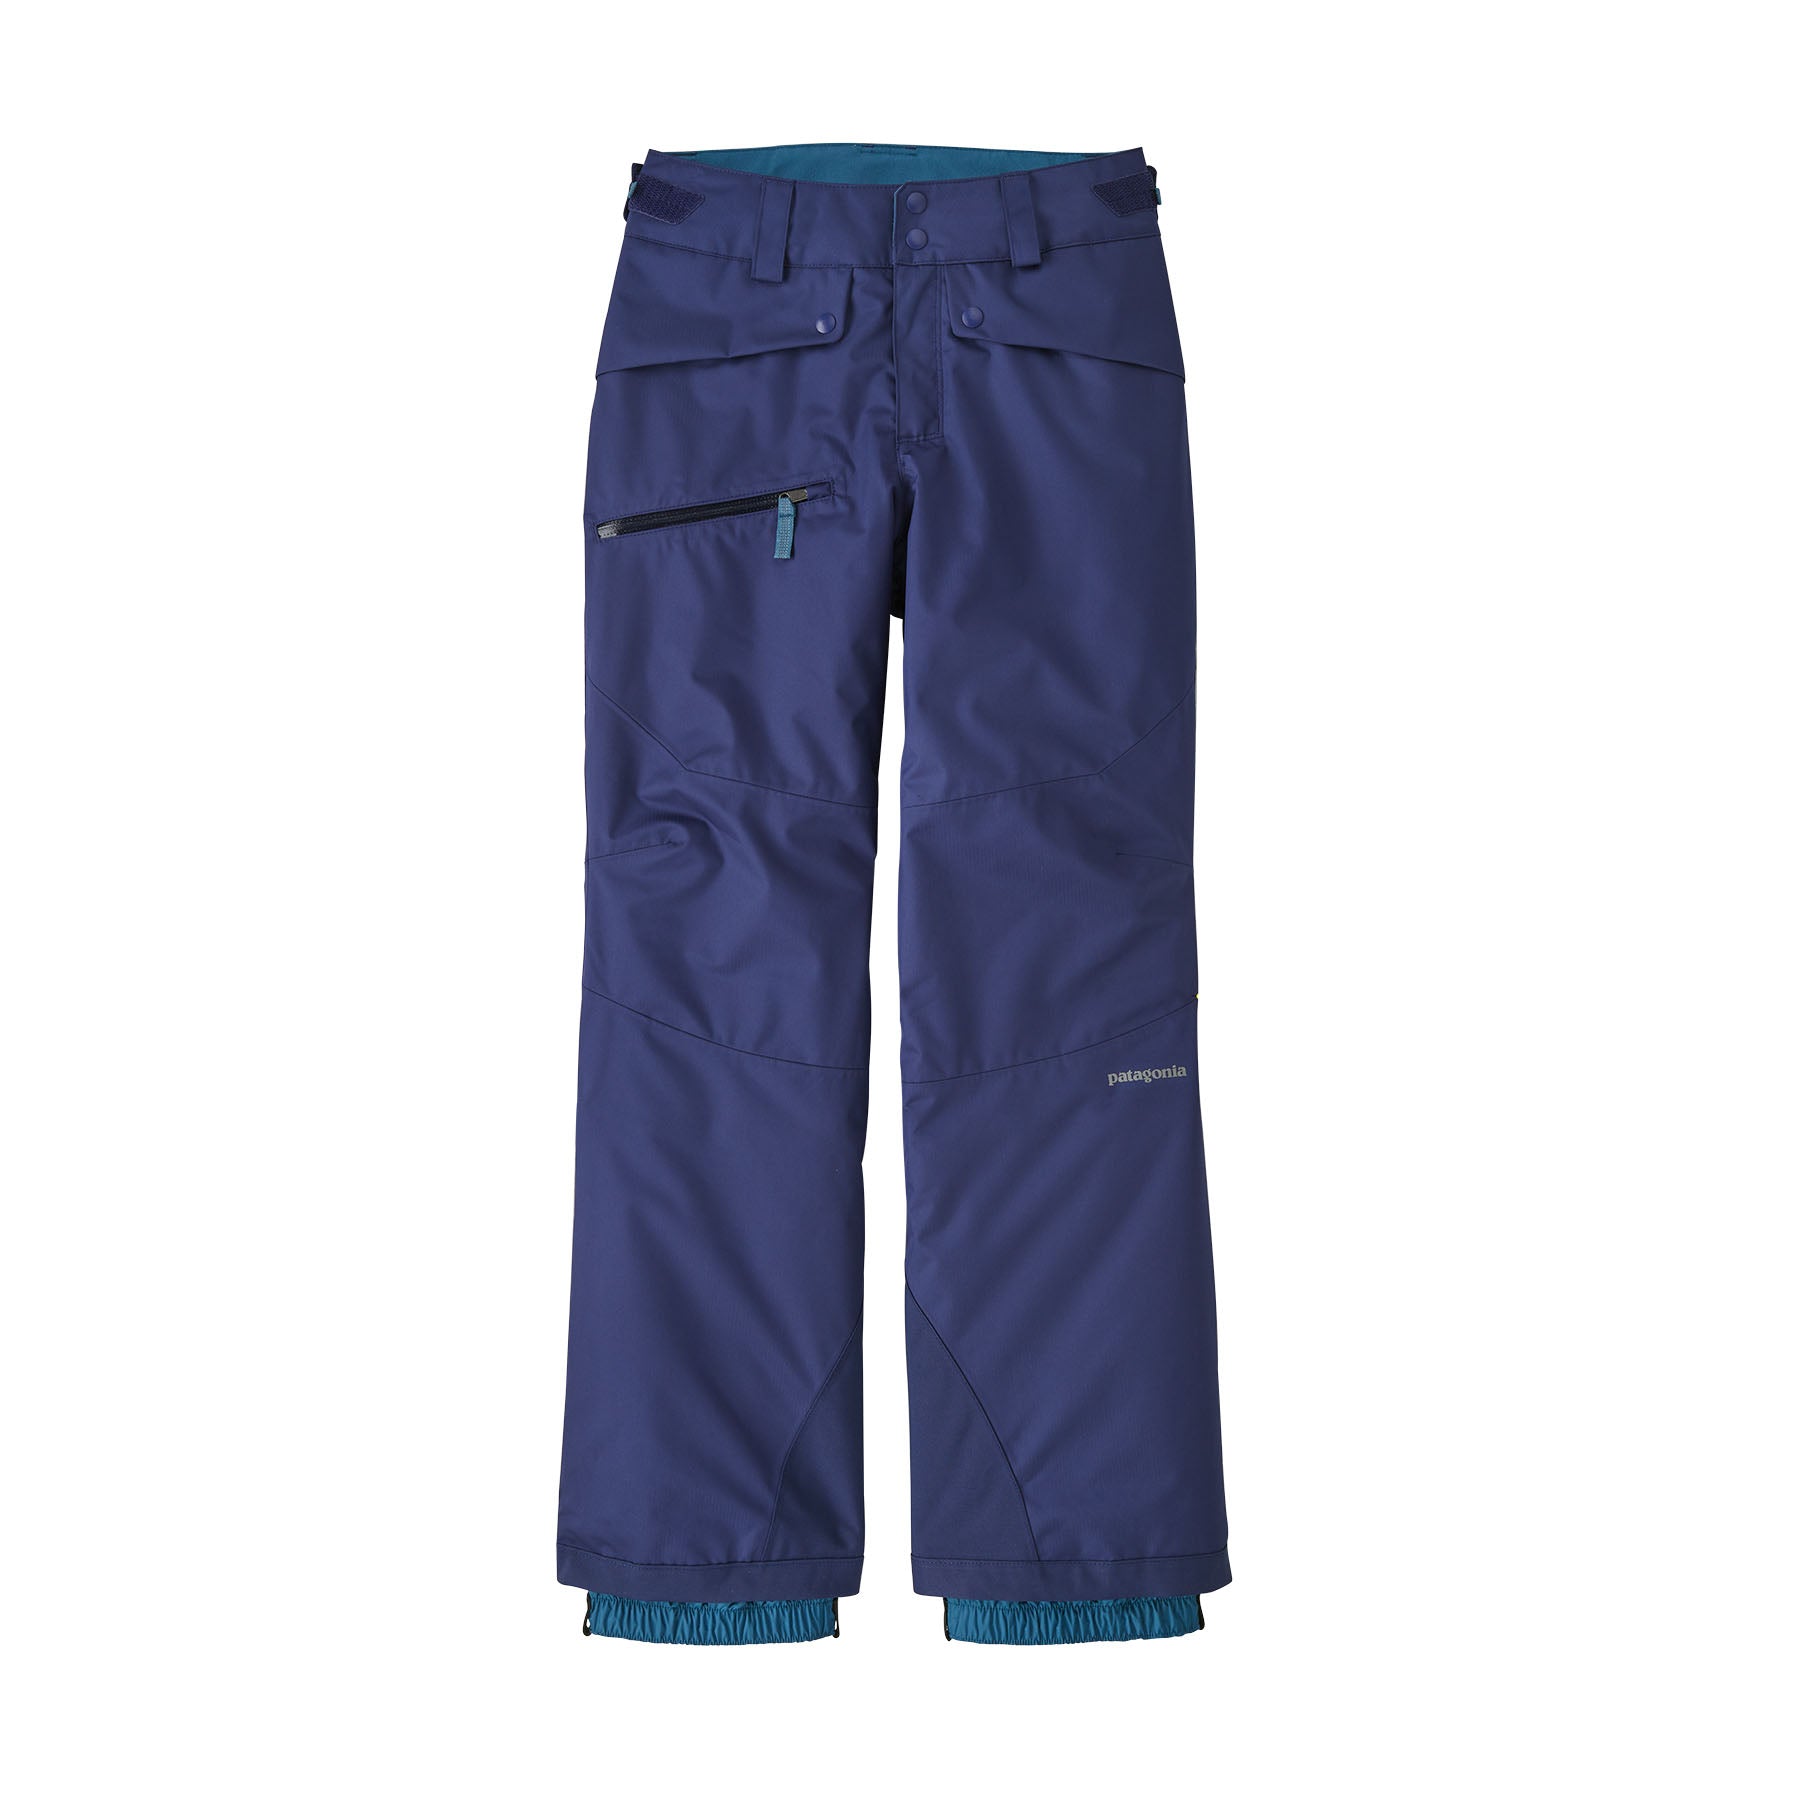 NILS sportswear ski snow black fleece lined pants waterproof sz 10 shorts